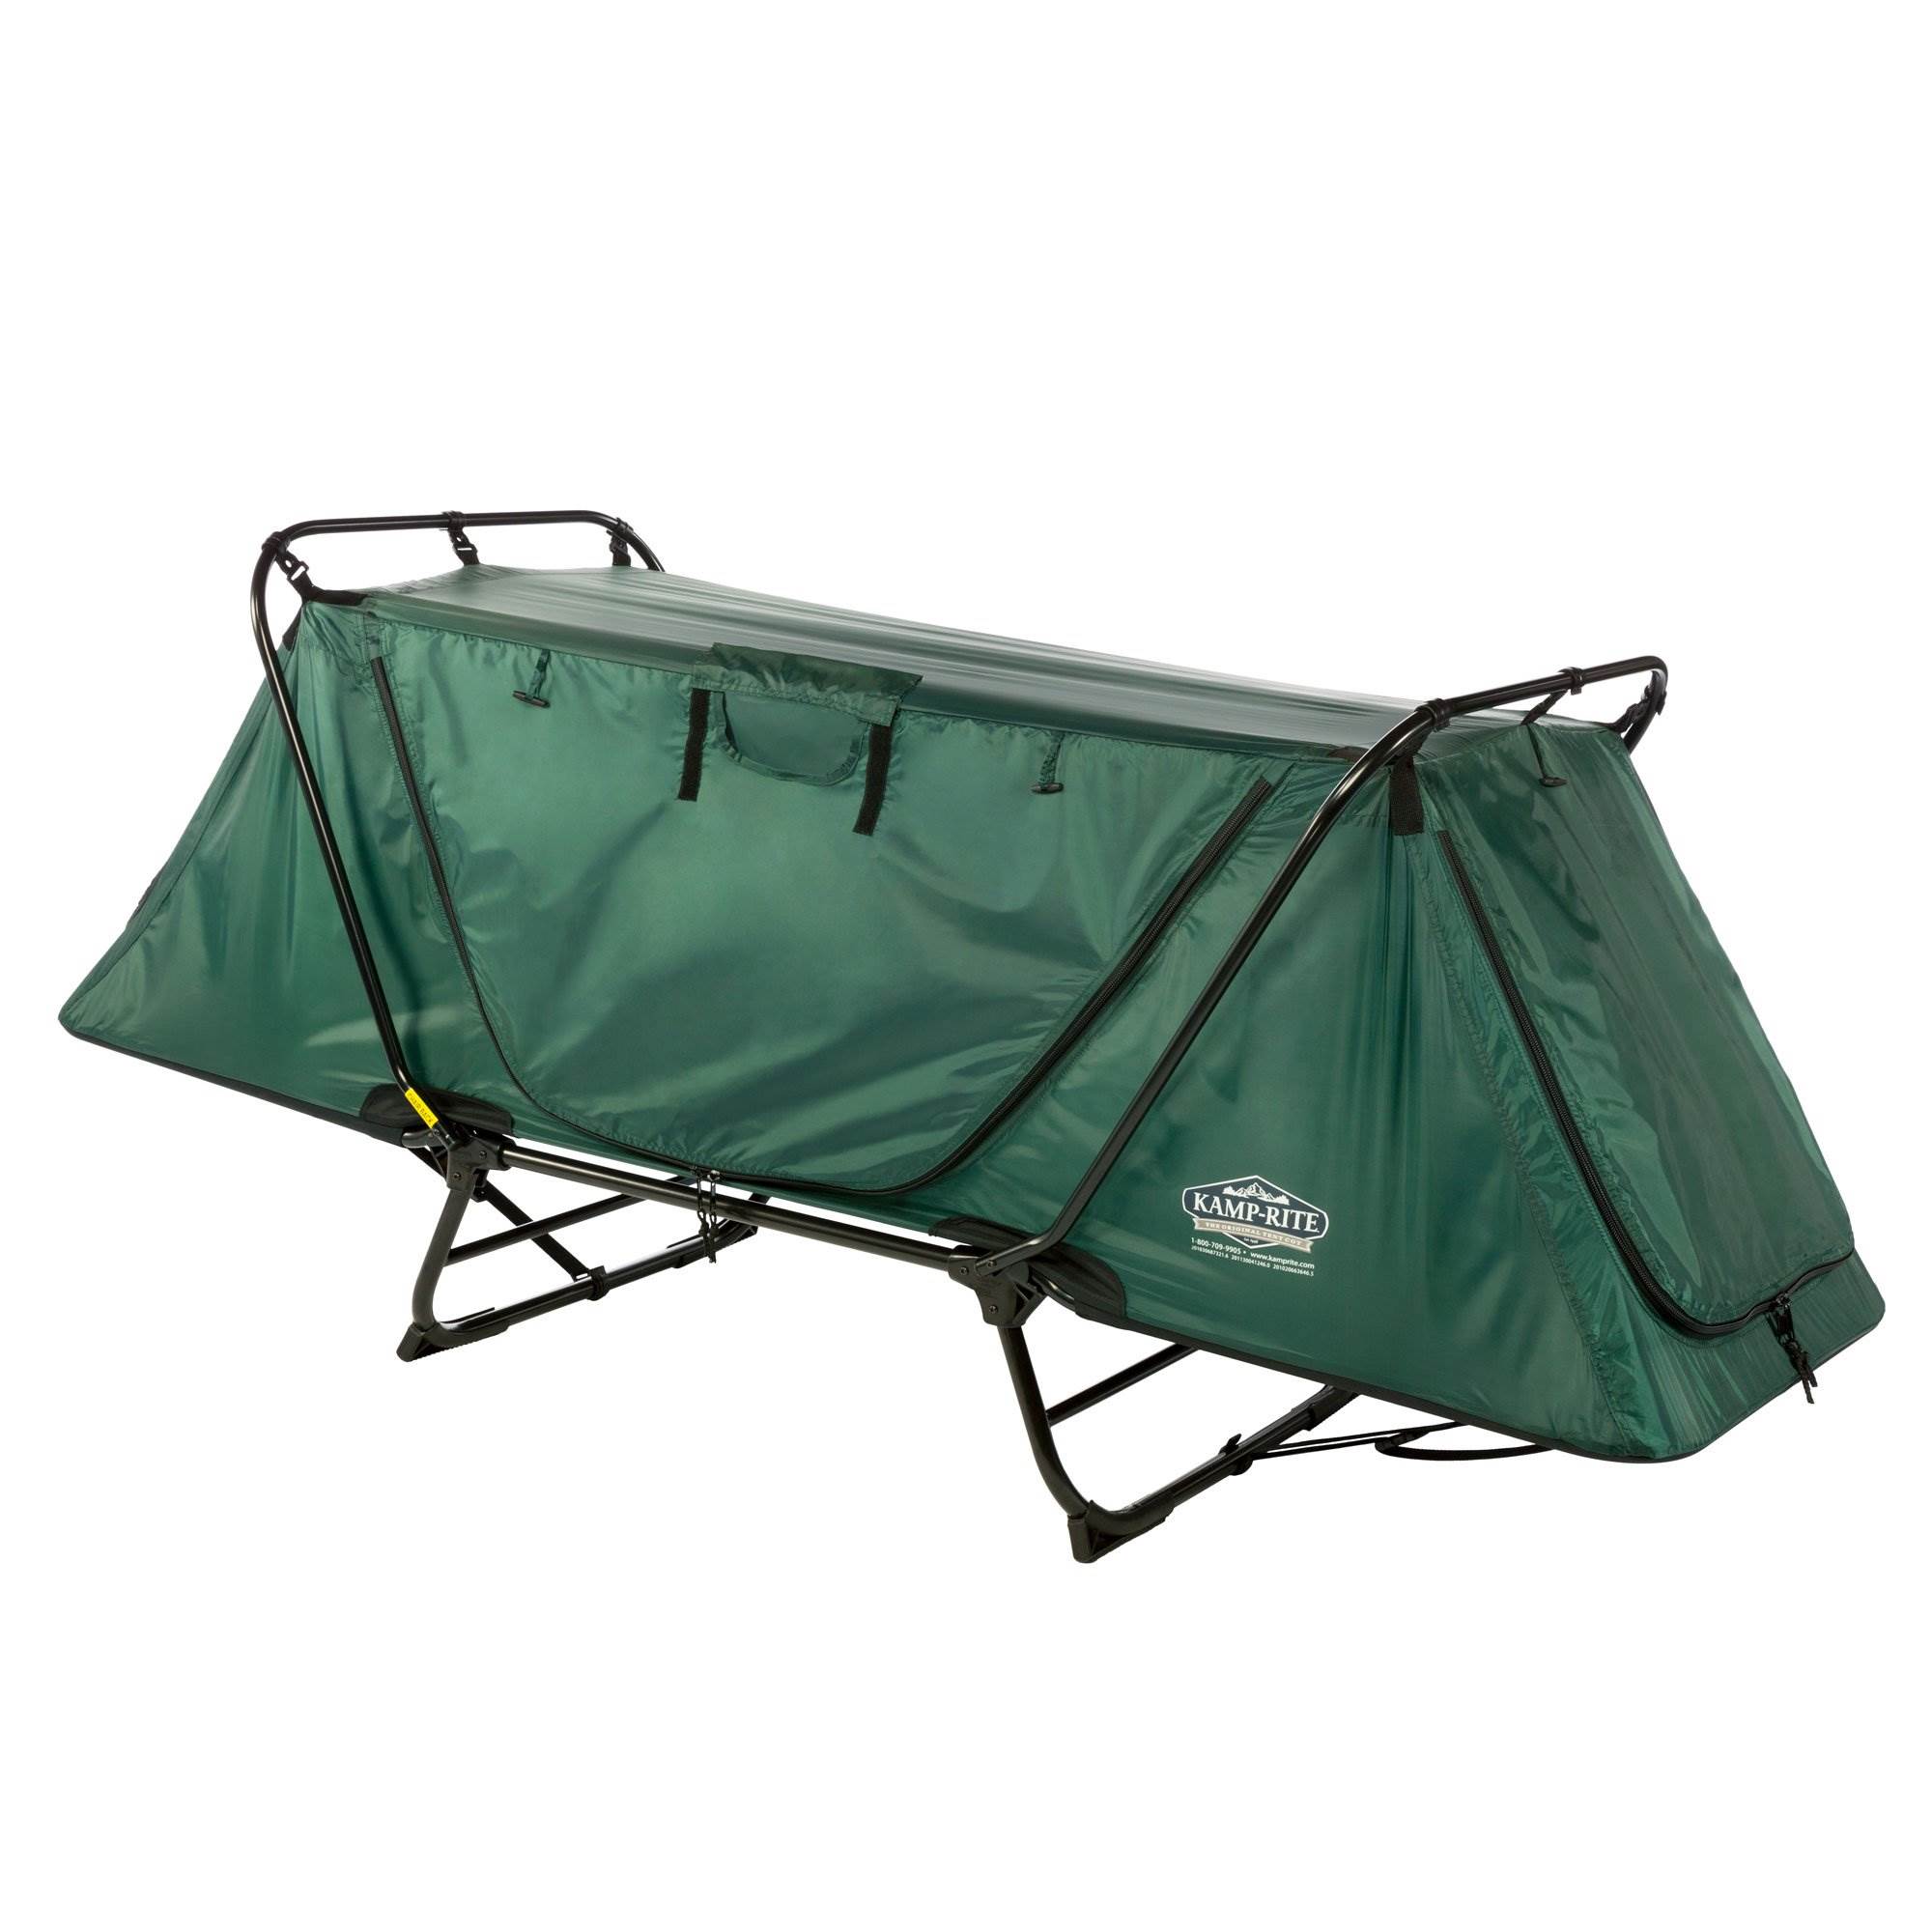 Kamp-Rite Original Portable Versatile Cot, Chair, & Tent, Easy Setup - image 1 of 7